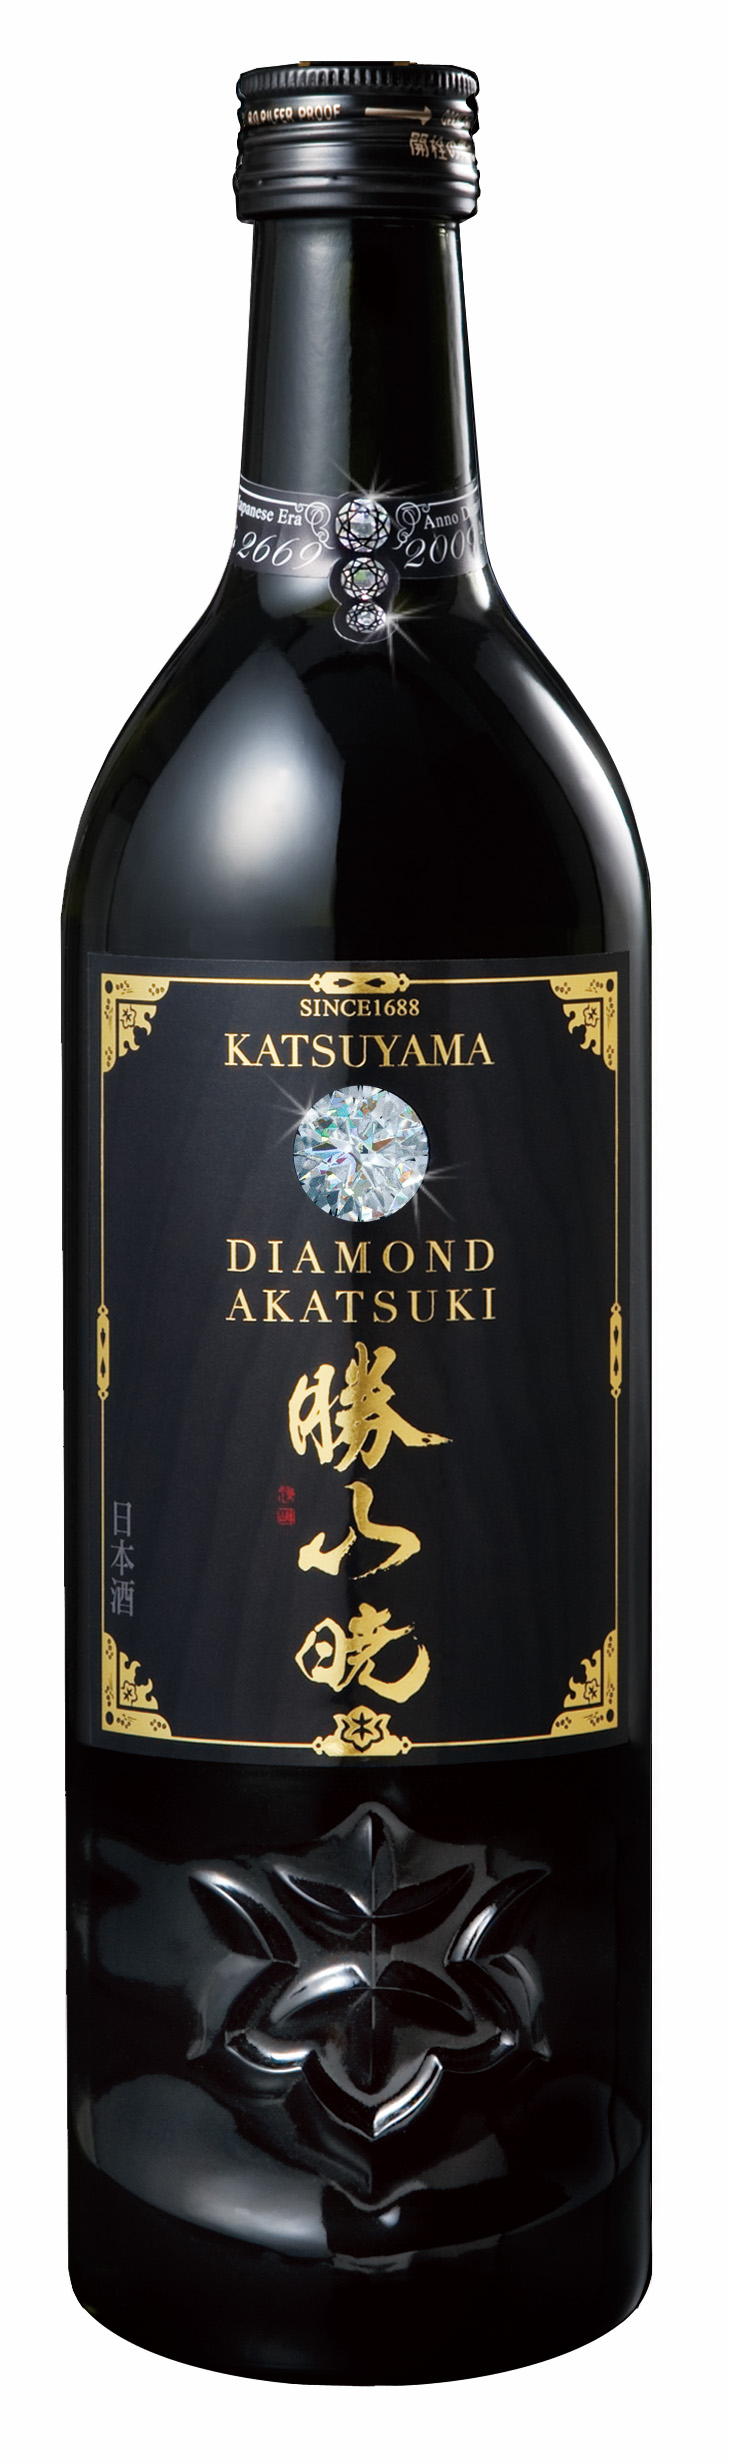 殿様酒「勝山」の最高スペック『DIAMOND AKATSUKI』が誕生 最強の酒造